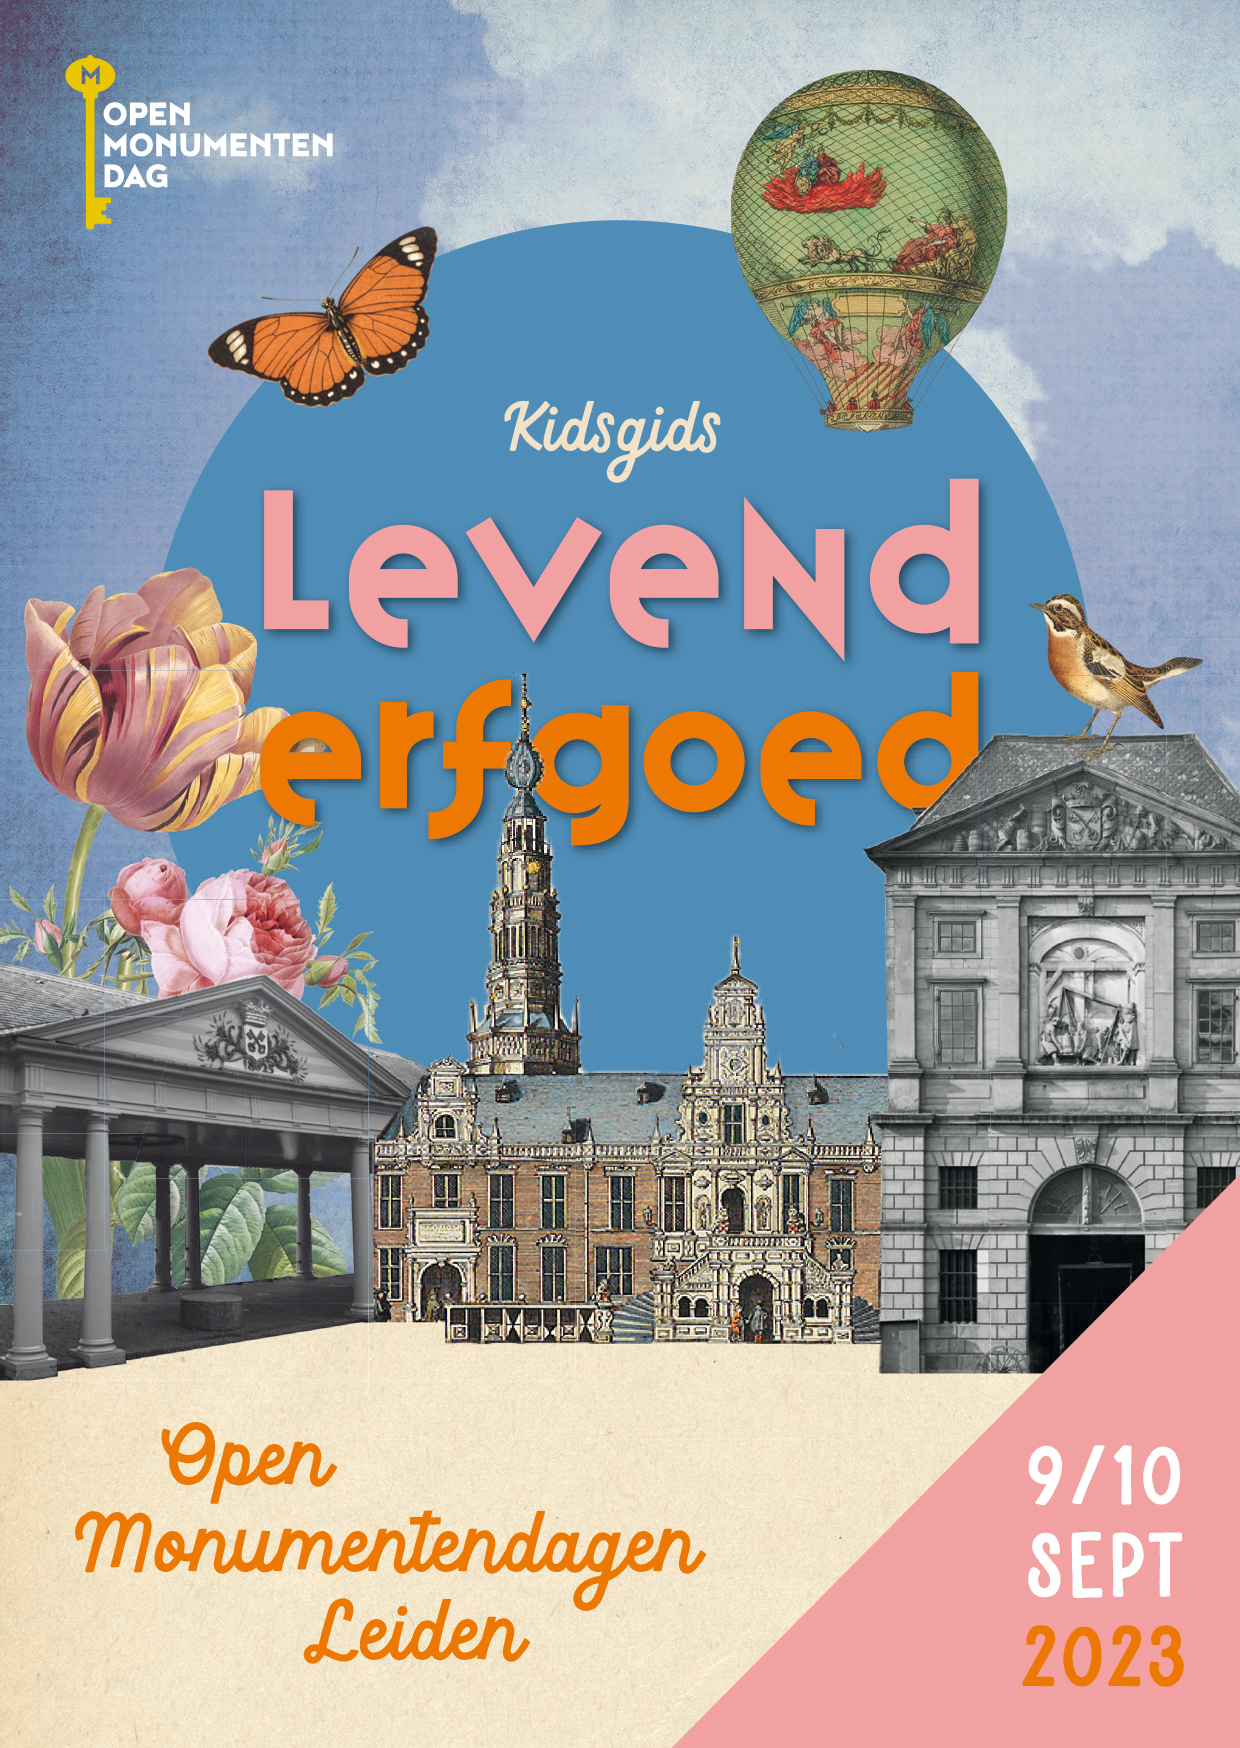 Kidsgids Open Monumentendagen Leiden class=